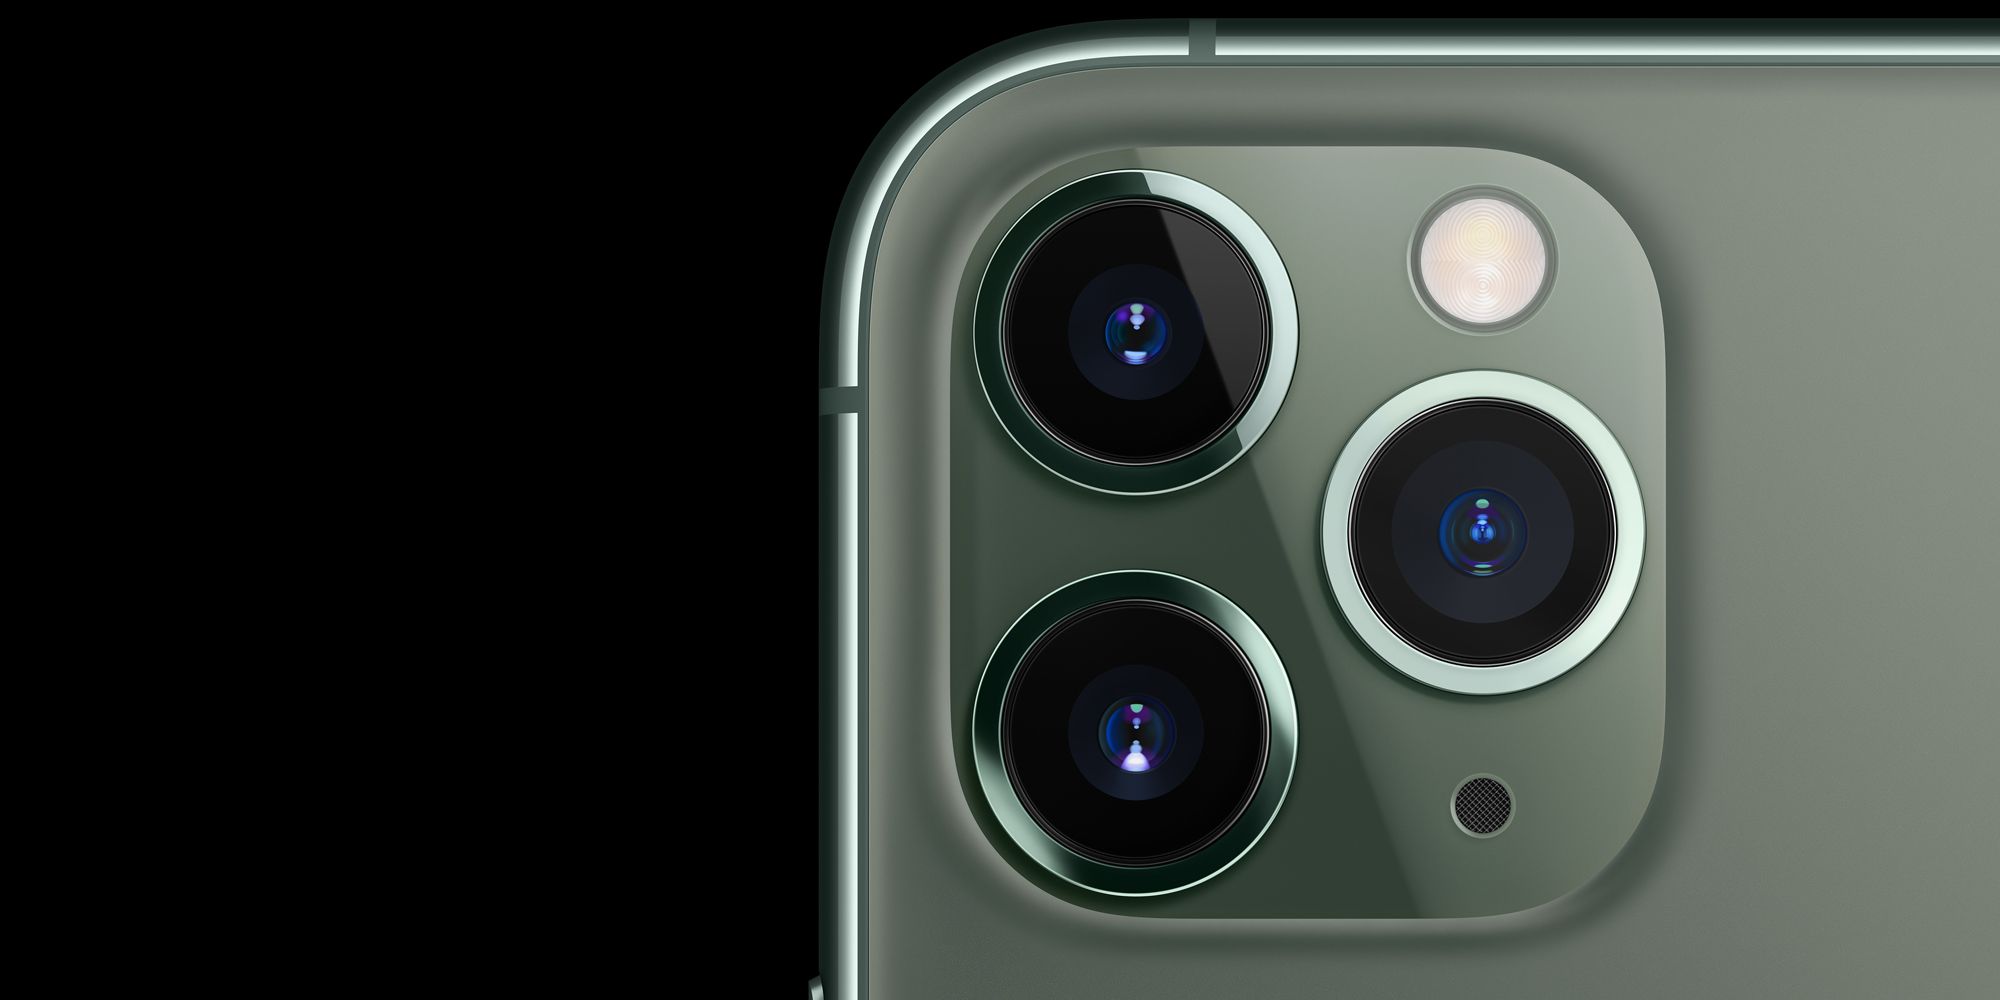 iPad Pro 2020 diperkirakan akan datang dengan suite kamera iPhone 11 Pro